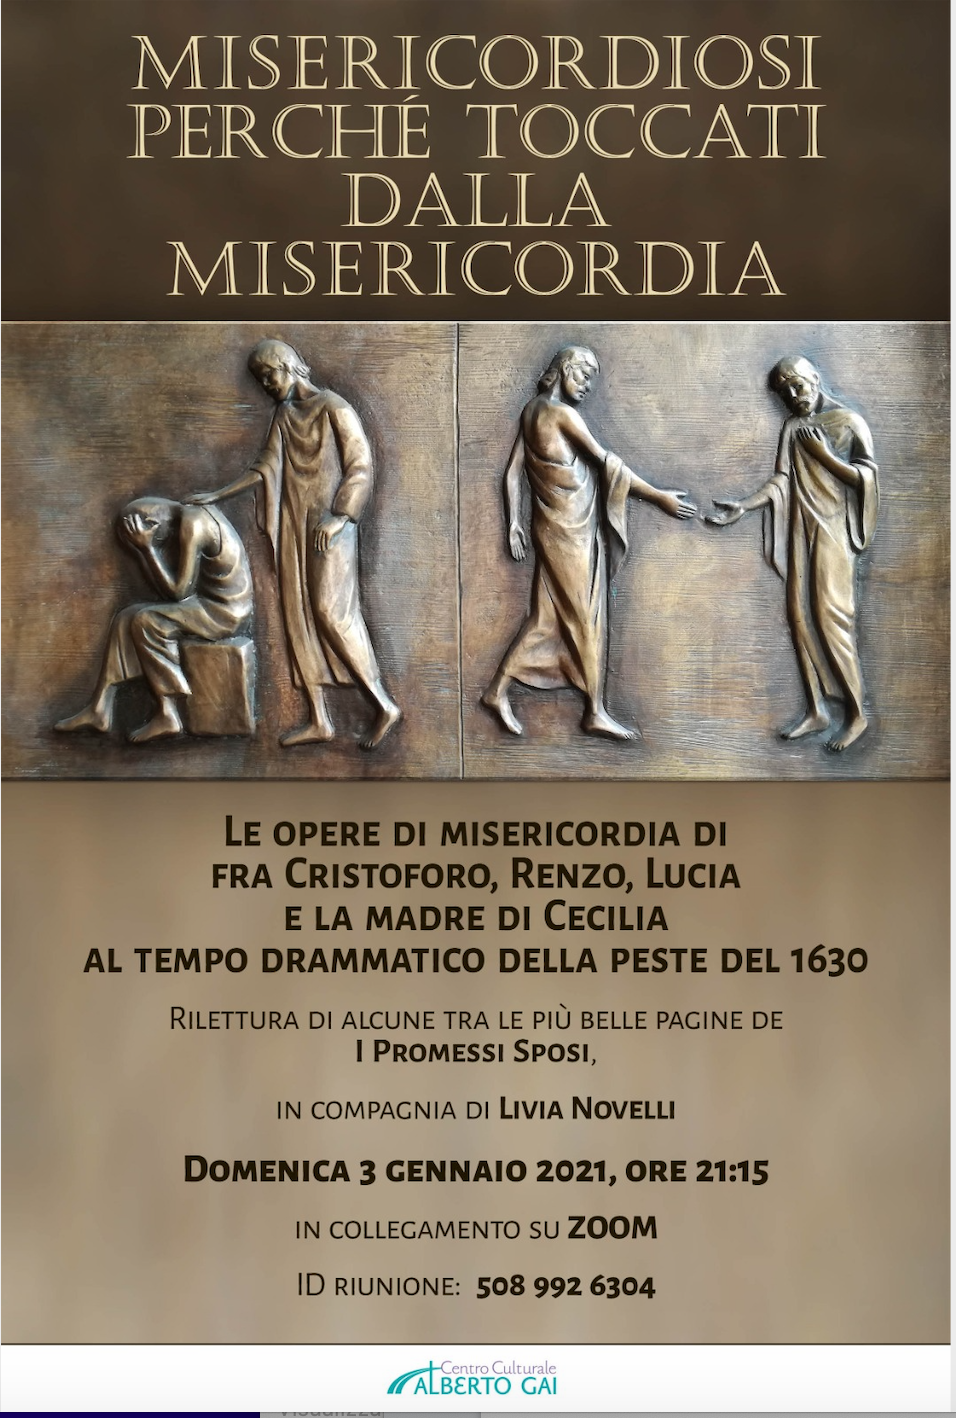 Featured image for “Casale Monferrato (Al): Rilettura dei Promessi Sposi”